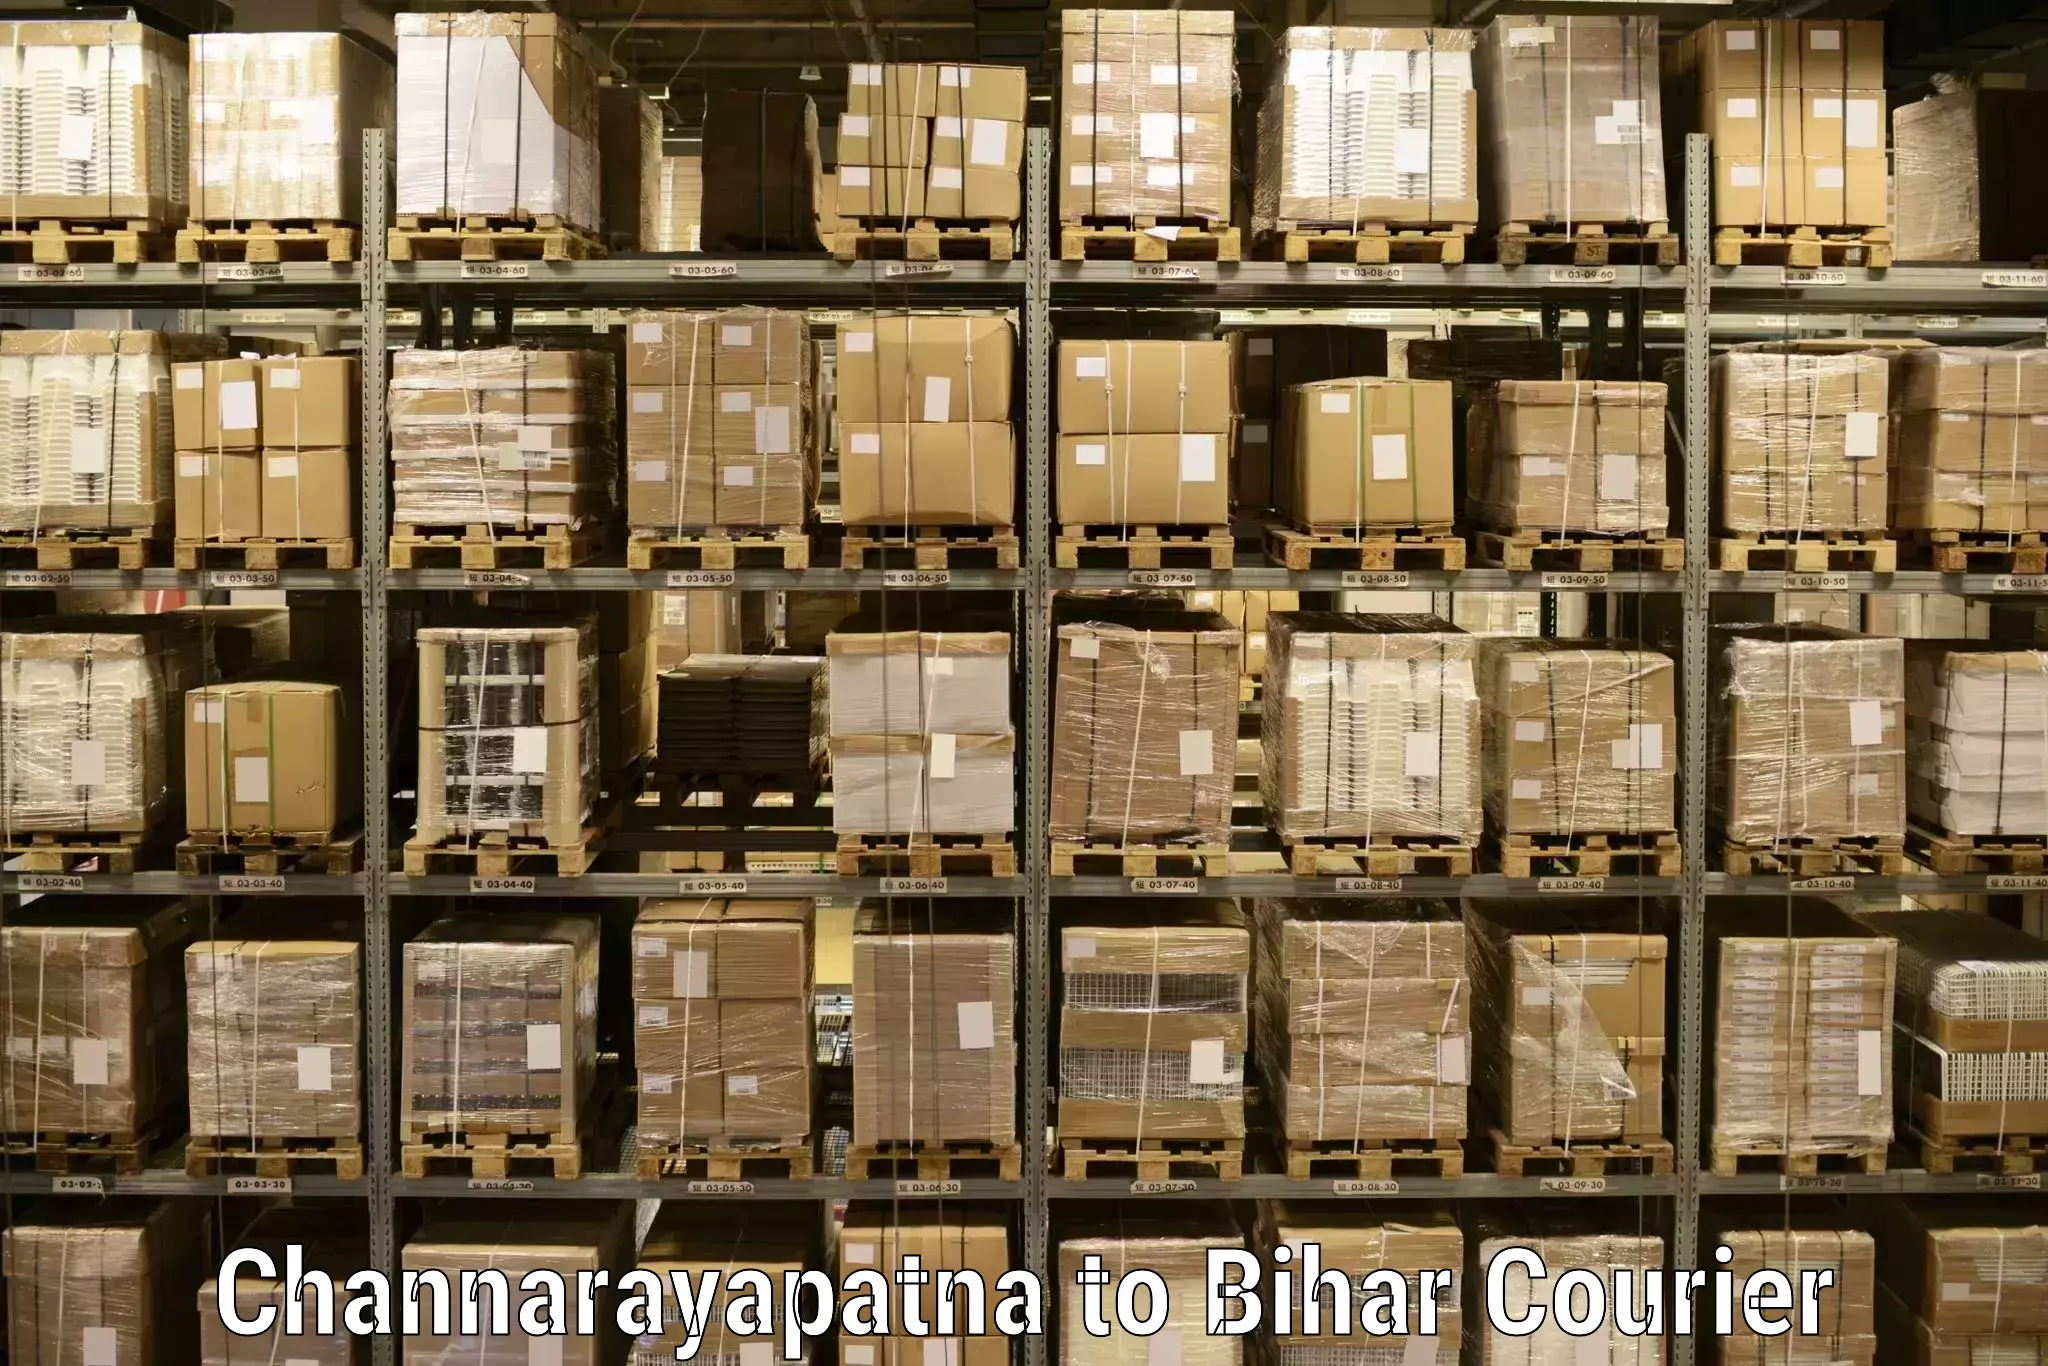 Speedy delivery service Channarayapatna to Basopatti